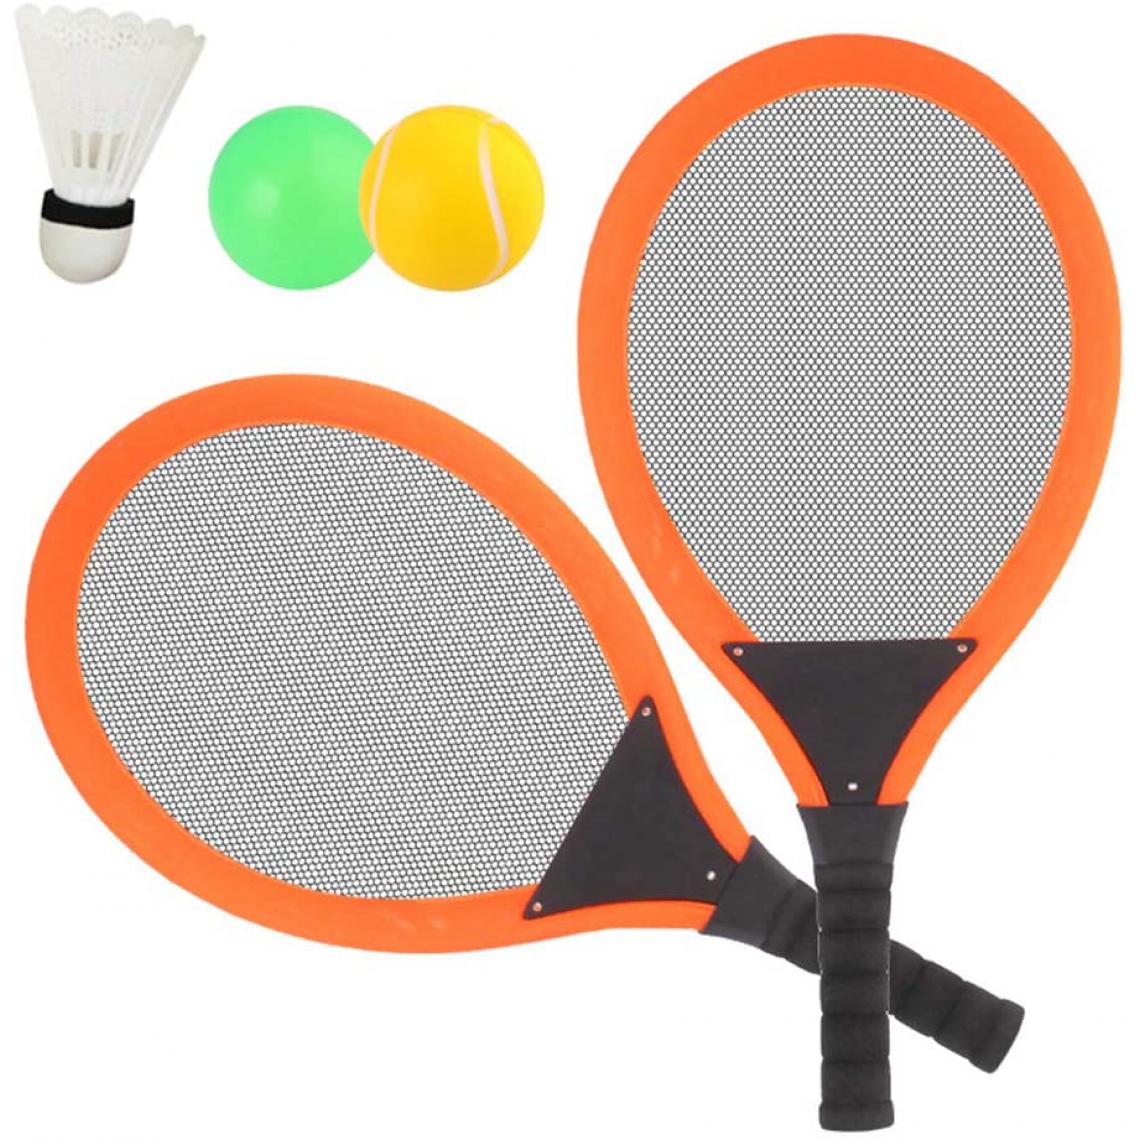 Dreamon - Jeu De Raquettes Tennis Badminton 3 in 1 orange noir - Jeux de balles